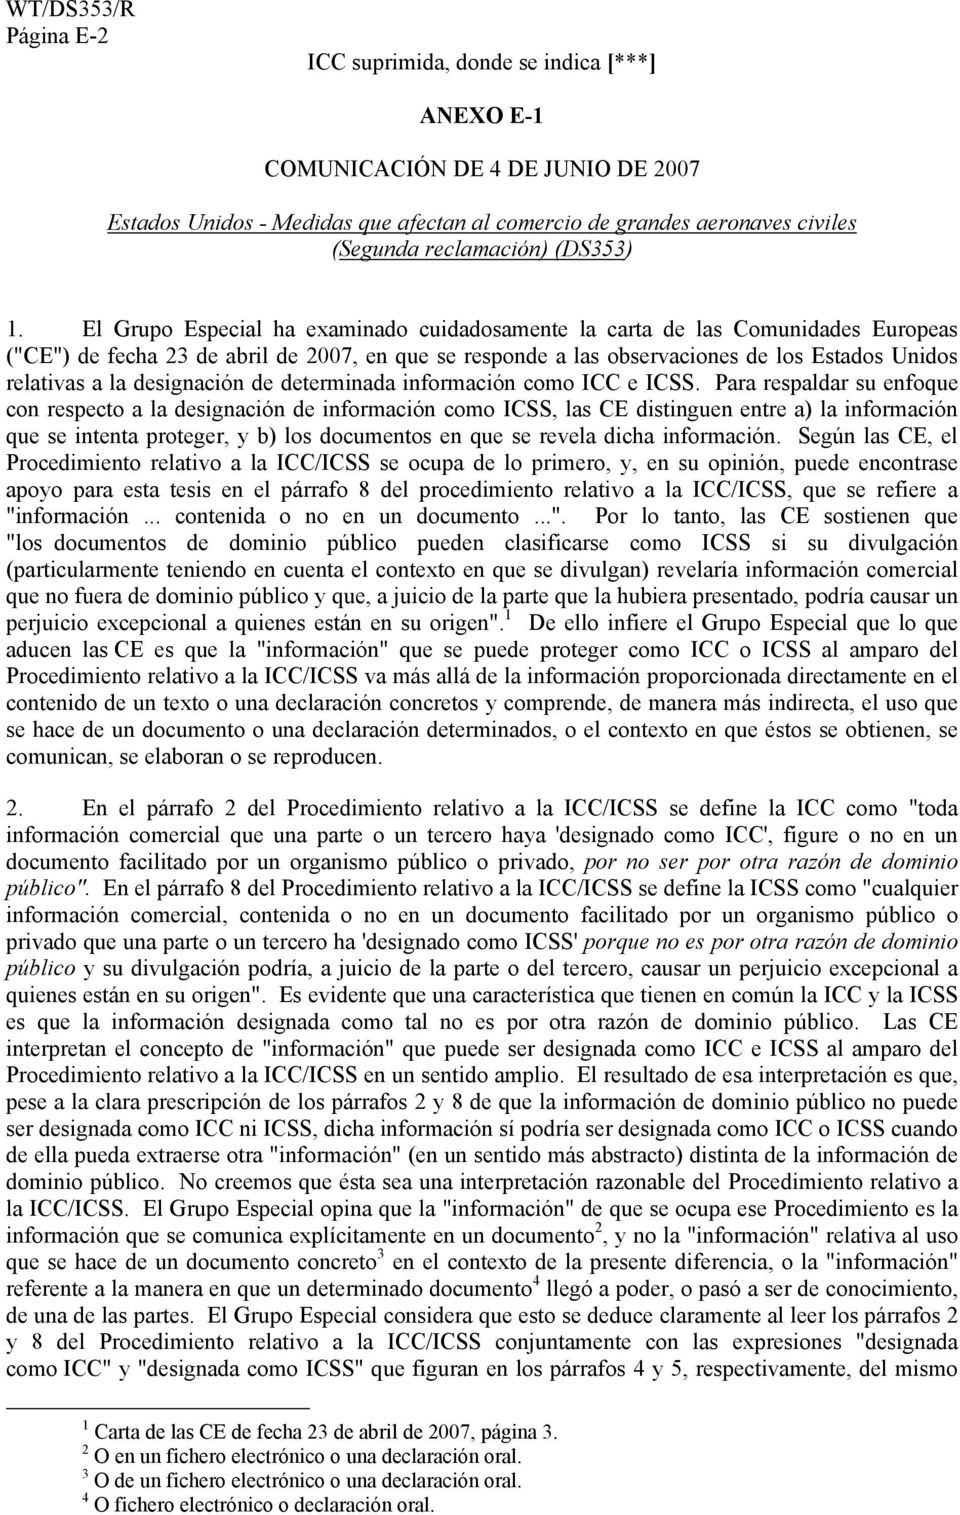 El Grupo Especial ha examinado cuidadosamente la carta de las Comunidades Europeas ("CE") de fecha 23 de abril de 2007, en que se responde a las observaciones de los Estados Unidos relativas a la